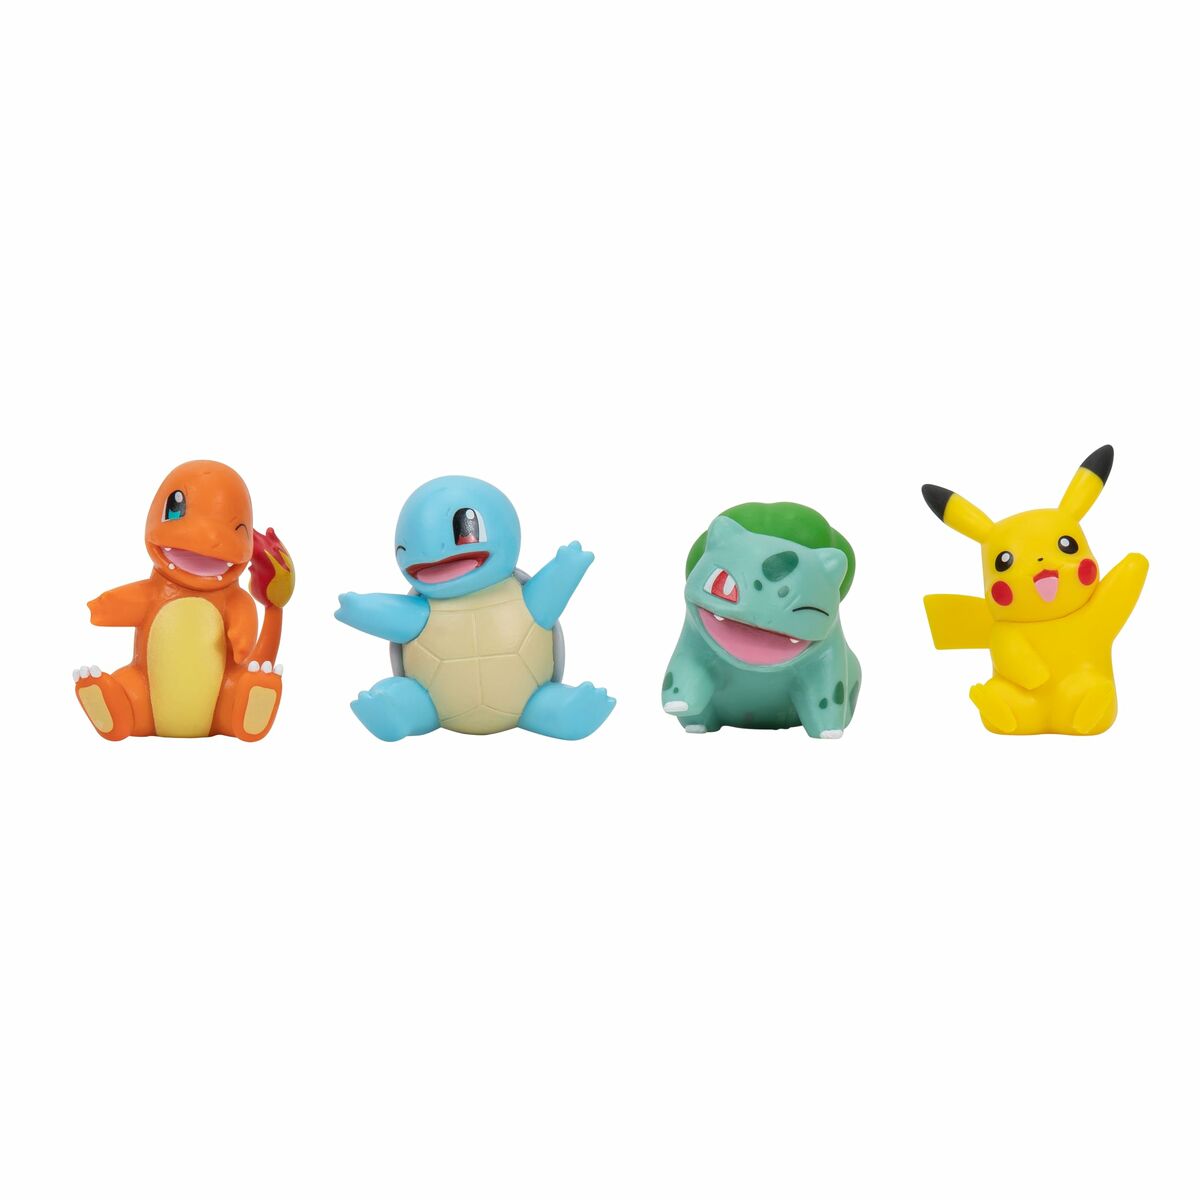 Statua Pokémon Kanto 5 cm 4 Pezzi - Disponibile in 3-4 giorni lavorativi